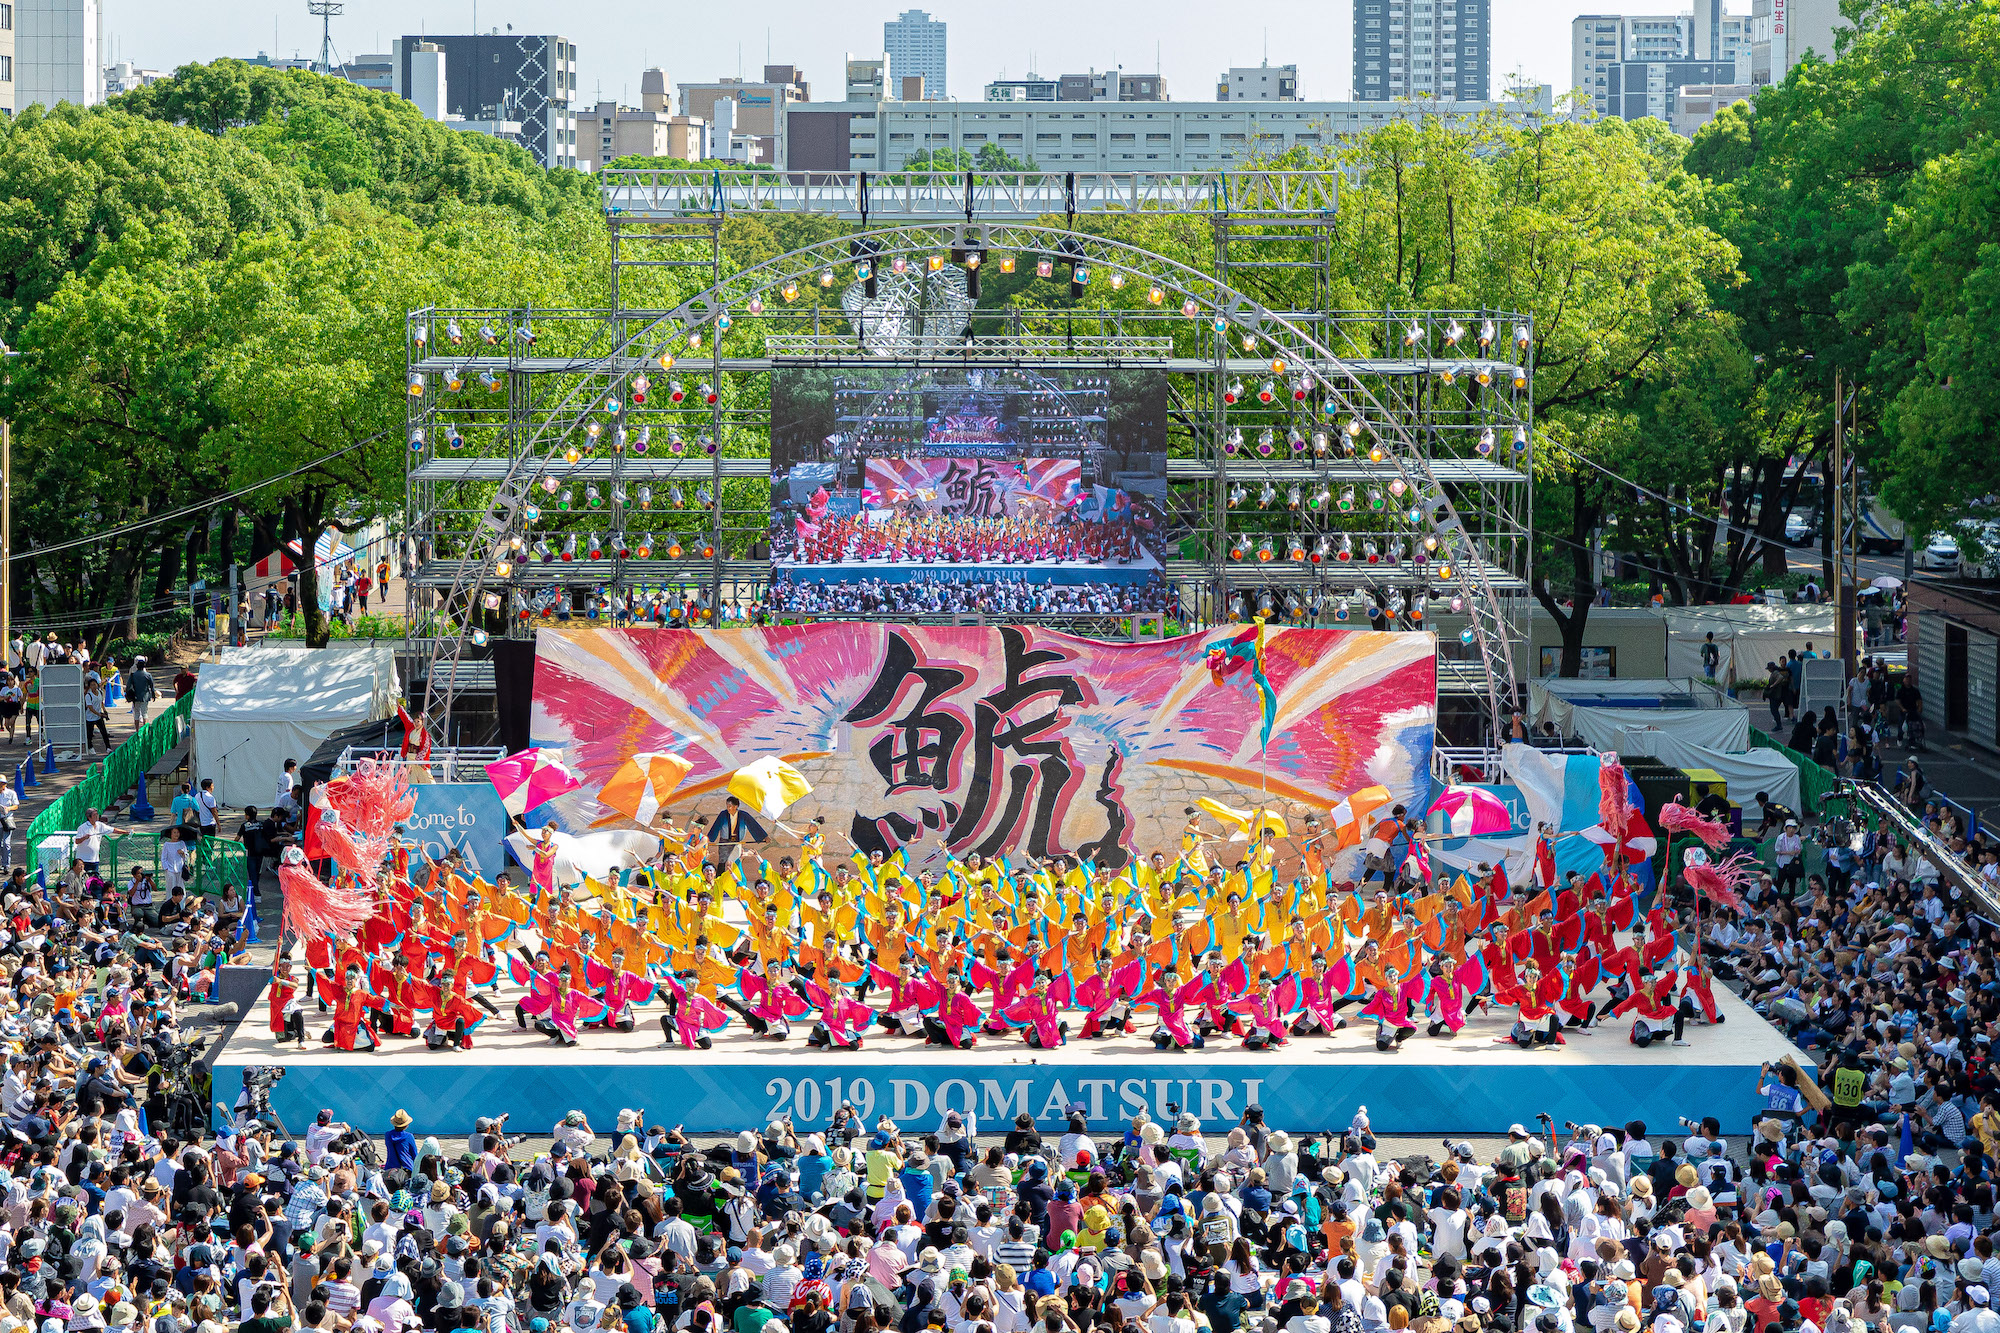 Nippon Domannaka Festival (Domatsuri)